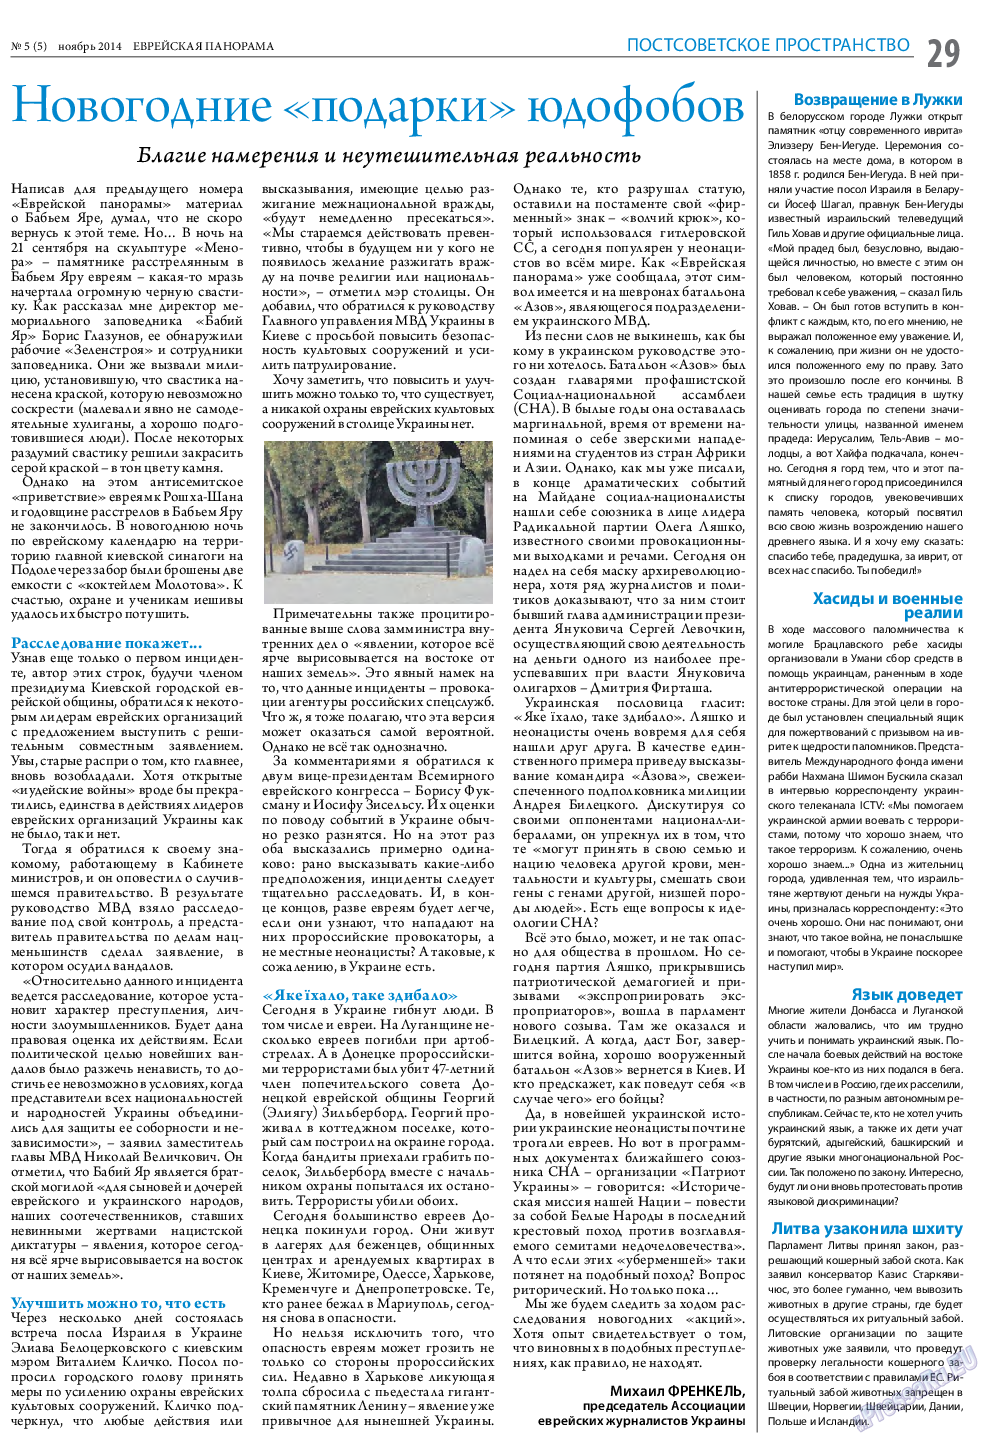 Еврейская панорама (газета). 2014 год, номер 5, стр. 29